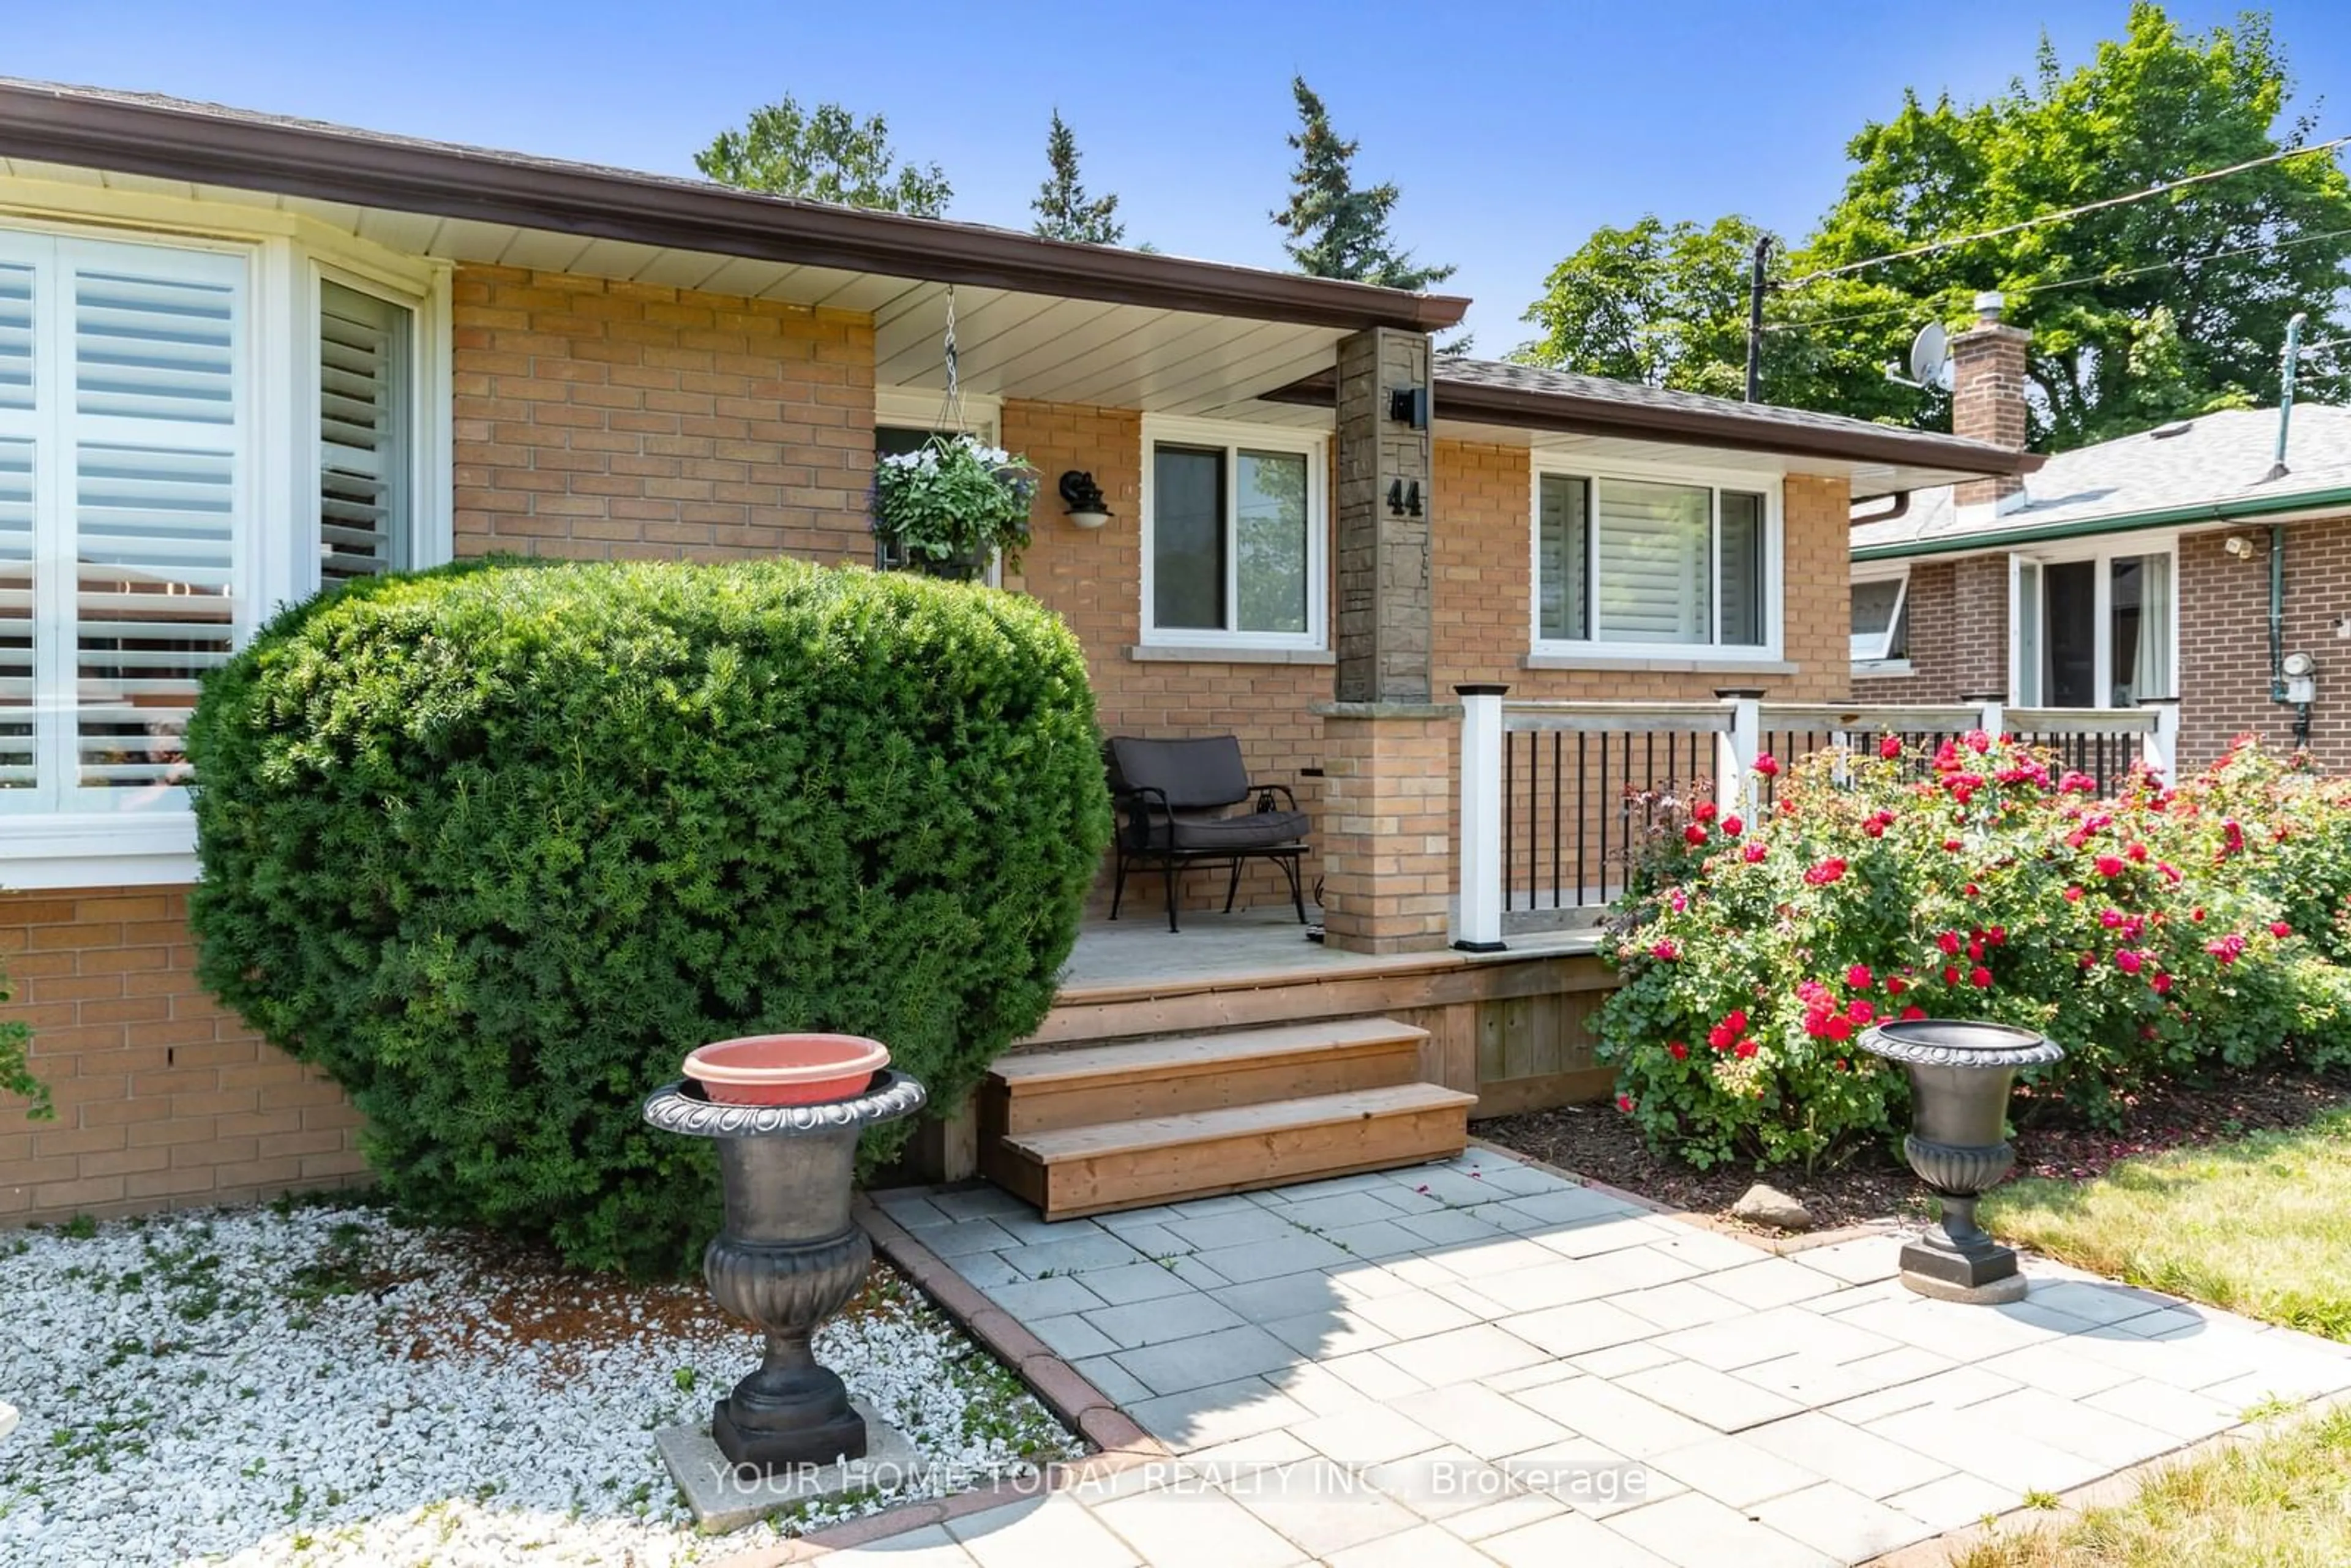 Home with brick exterior material for 44 Delrex Blvd, Halton Hills Ontario L7G 3Y4